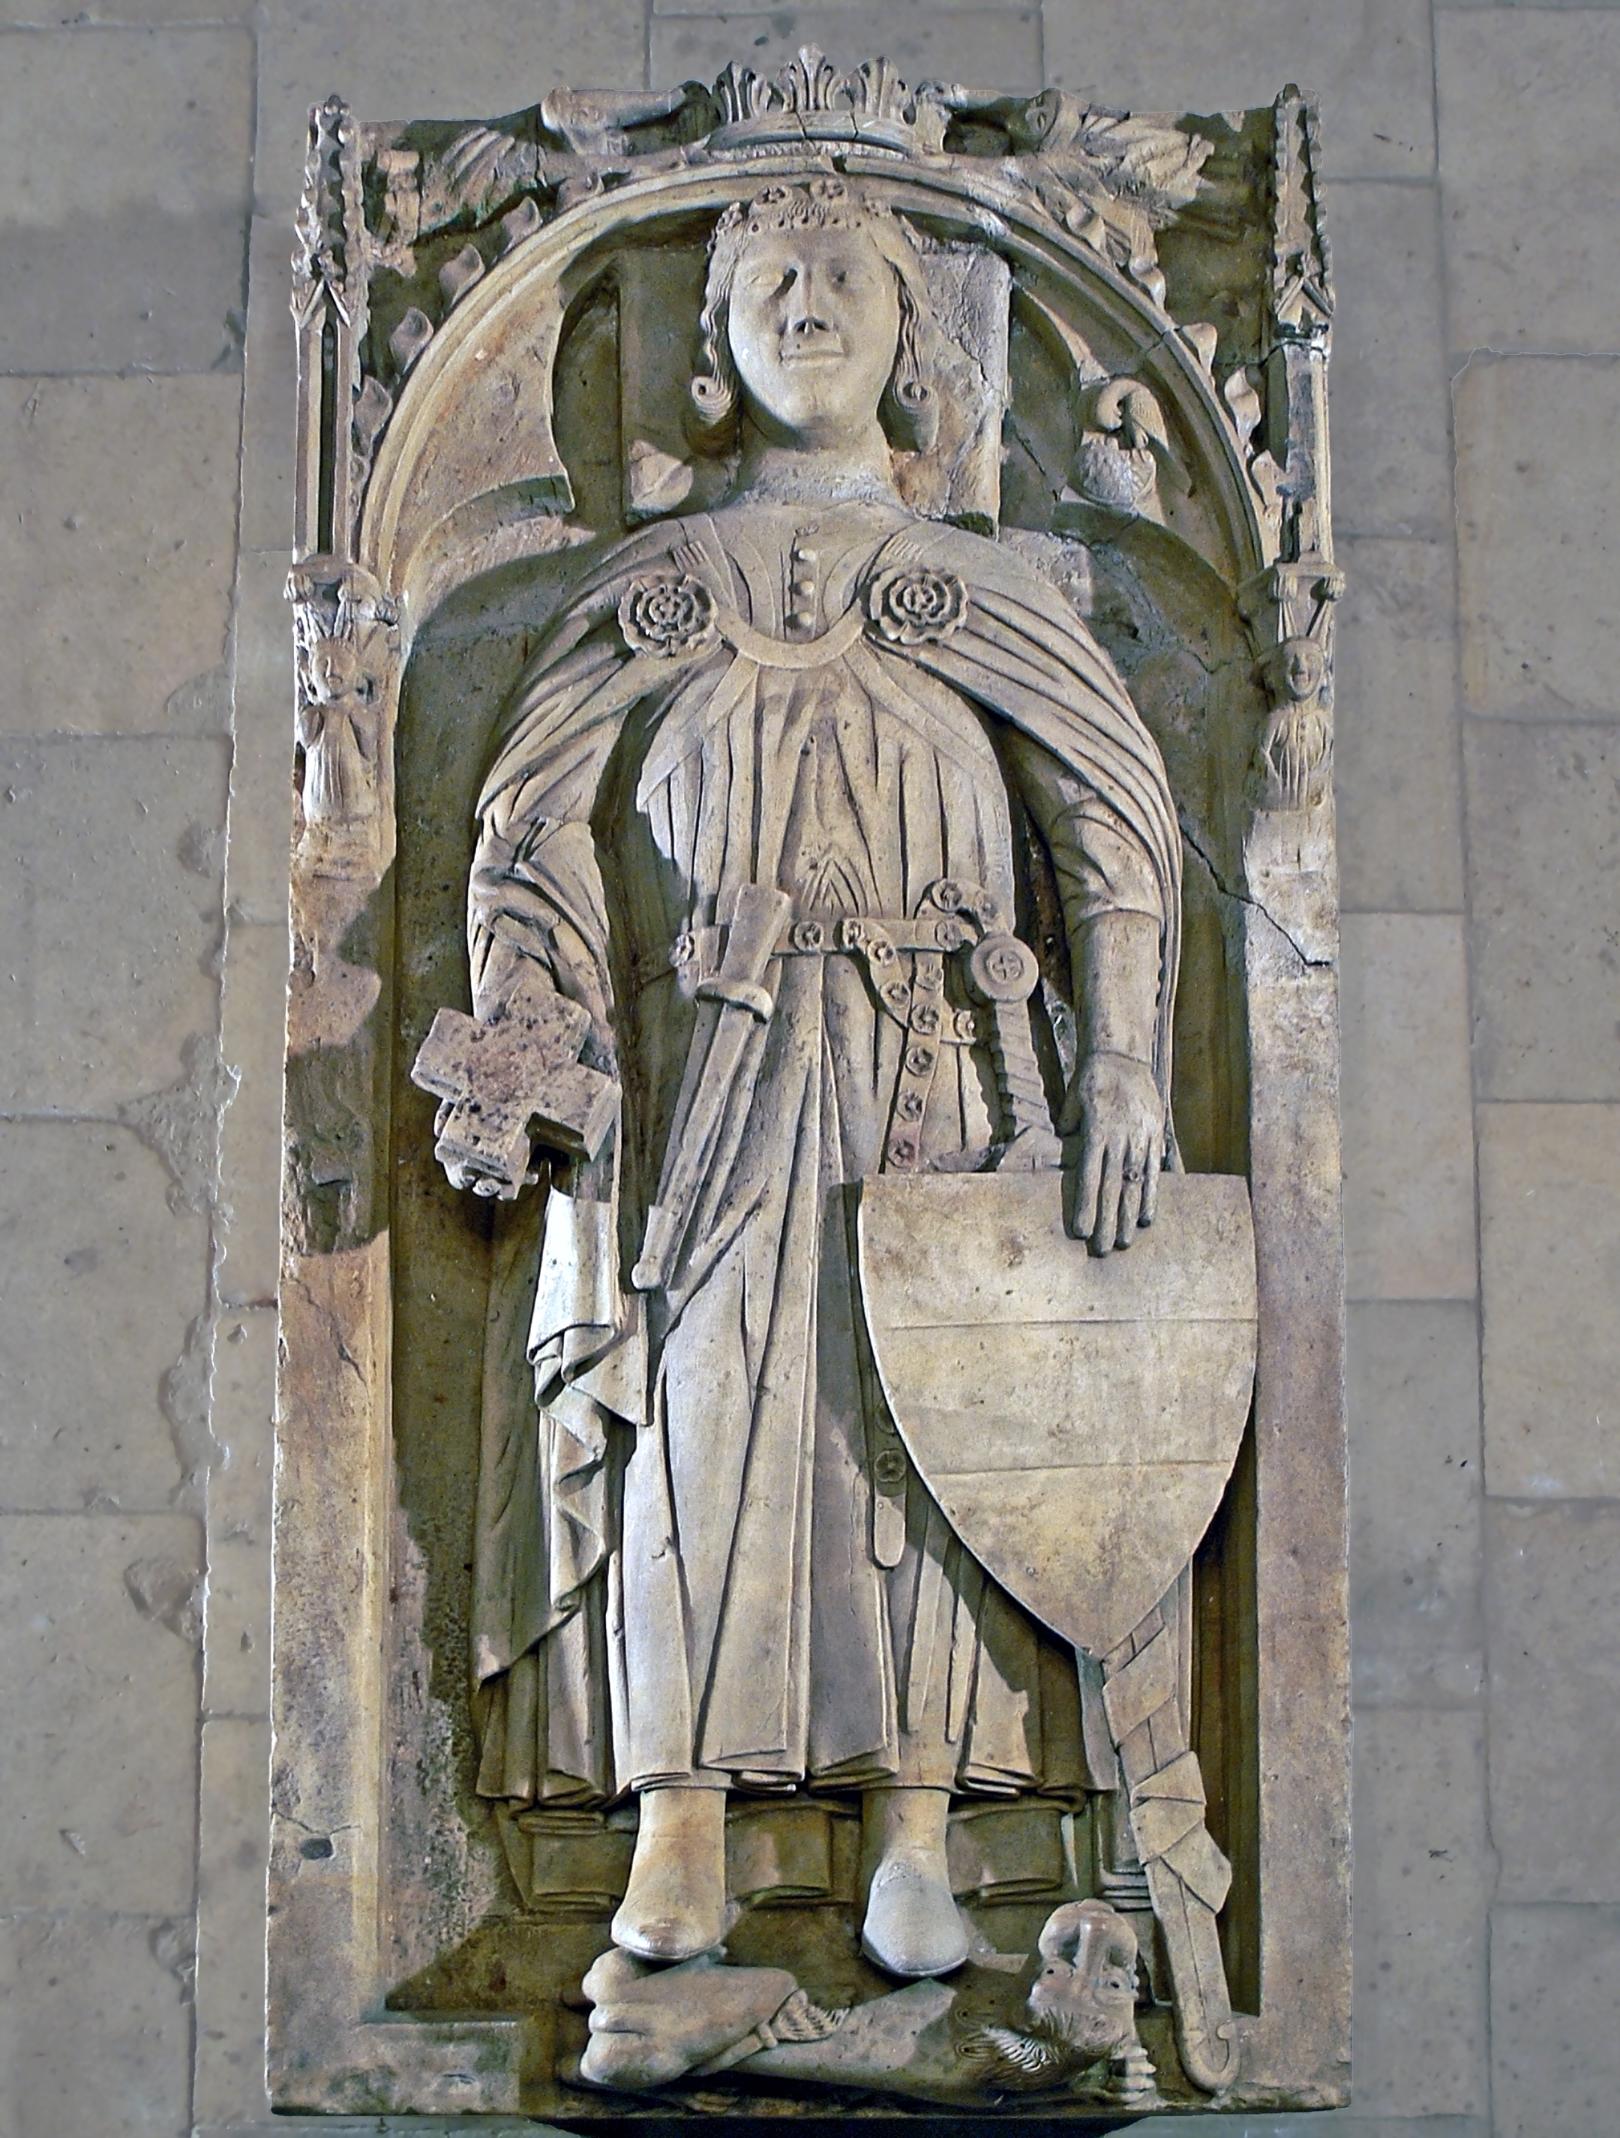 Grabtumba Gottfrieds in der Stiftskirche Cappenberg (c) Von Montecappio - Eigenes Werk, CC BY 3.0, https://commons.wikimedia.org/w/index.php?curid=10895537